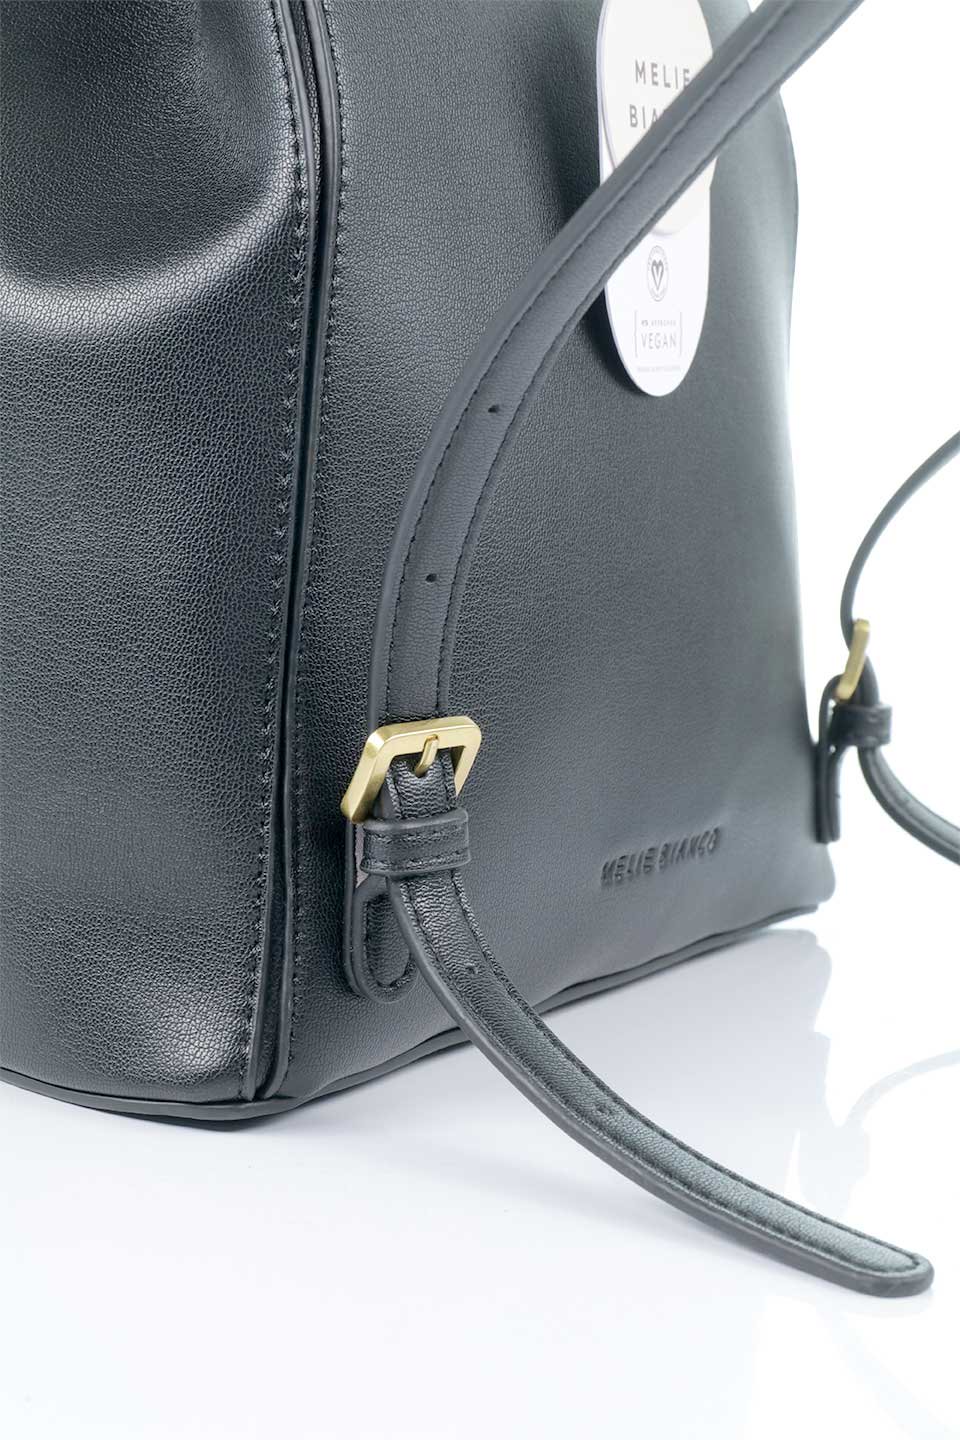 meliebiancoのAubrey(Black)ビーガンレザー・ミニリュック/海外ファッション好きにオススメのインポートバッグとかばん、MelieBianco（メリービアンコ）のバッグやその他。使いやすい程よい大きさのシンプルリュック。なめらかな高級ビーガンレザーを使用したシンプルデザインのアイテム。/thumb-8